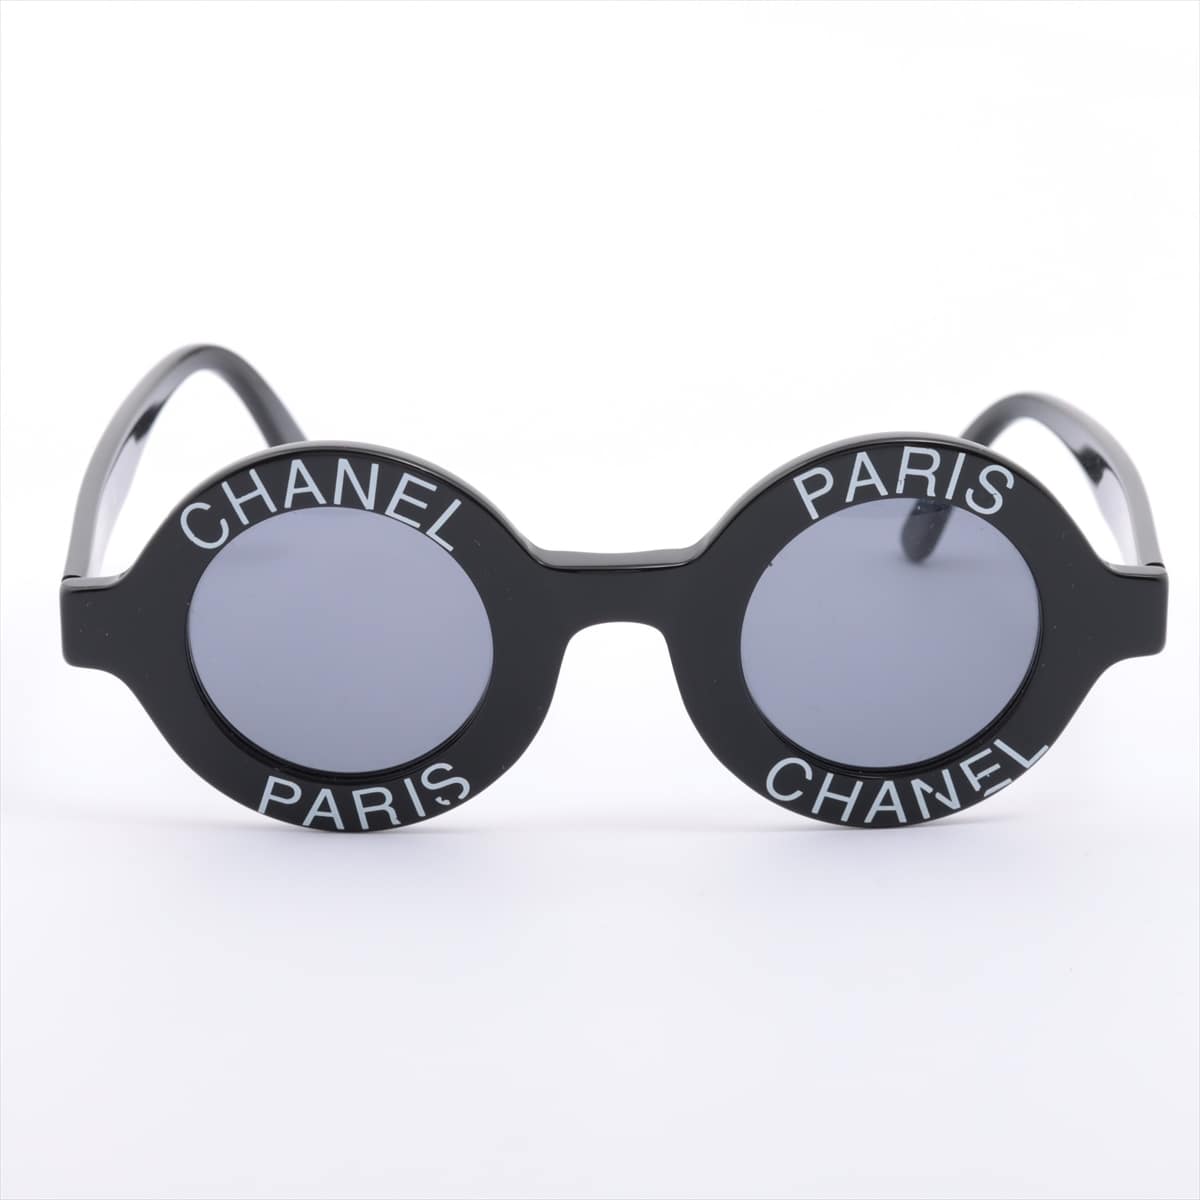 Chanel 01945 94305 Logo Sunglasses Plastic Black × White